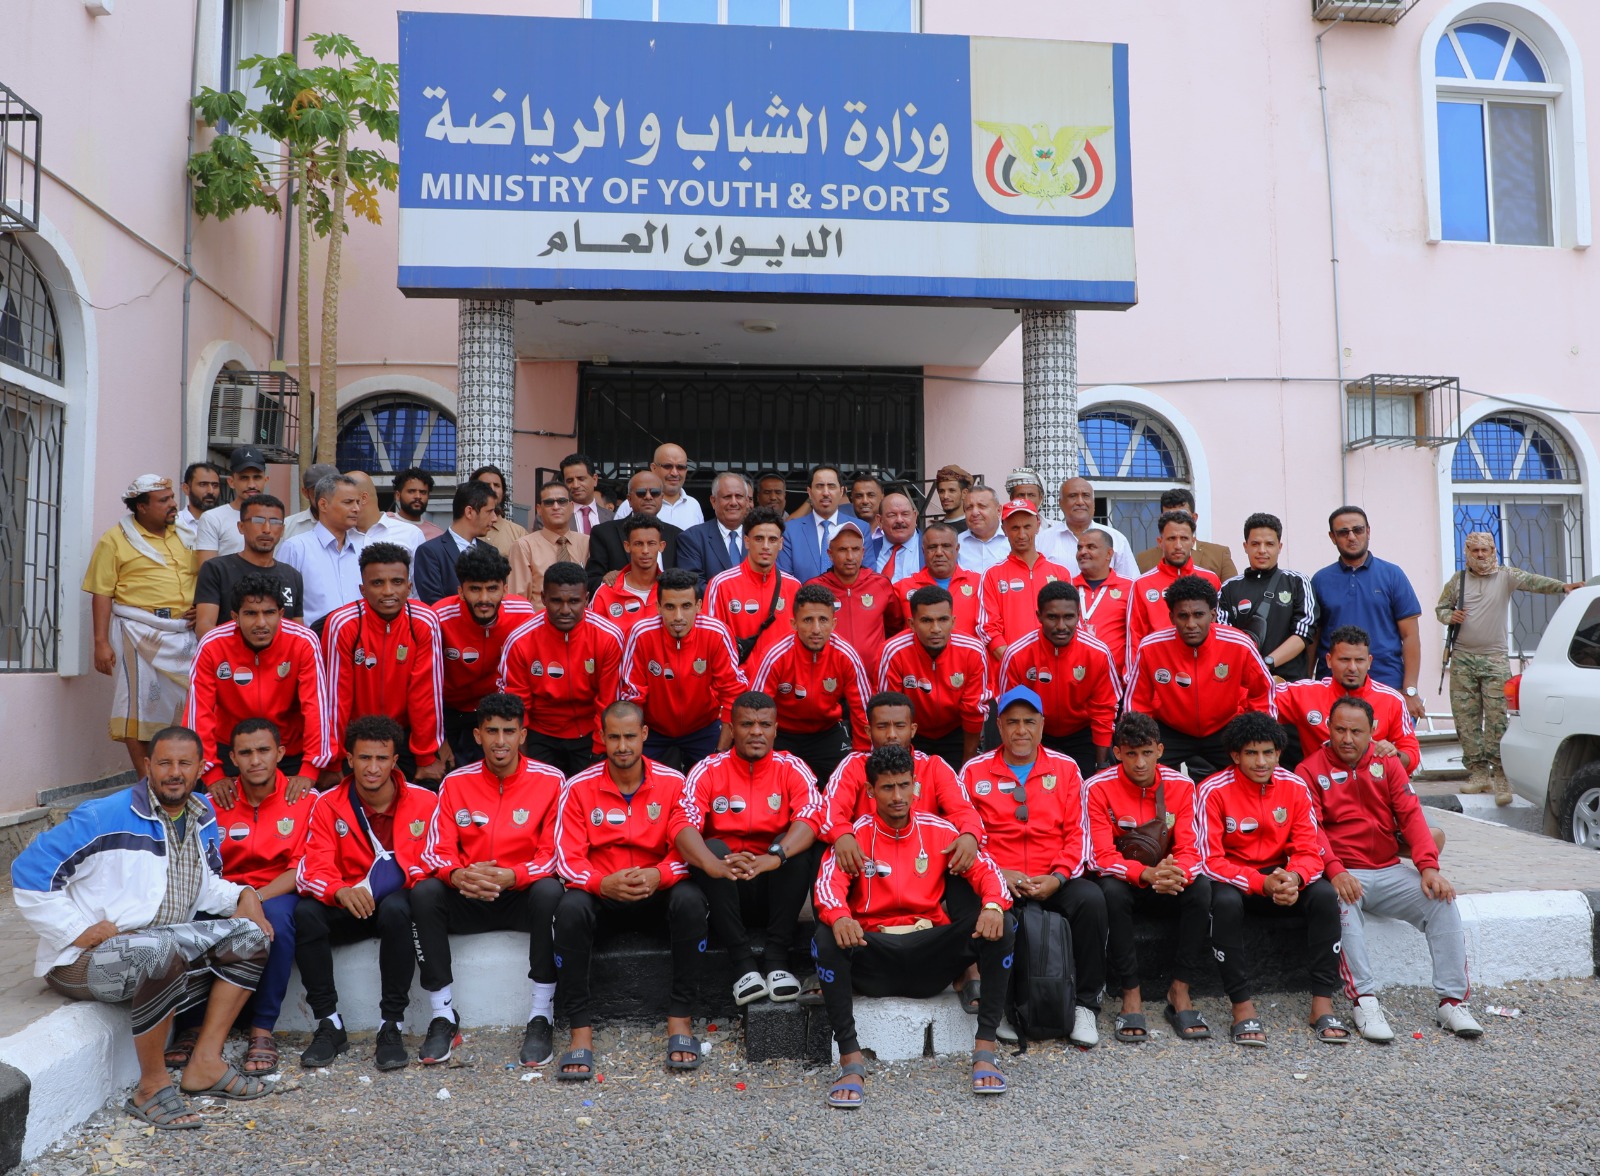 البكري يكرّم نادي فحمان لكرة القدم المتأهل إلى الدور الأول من بطولة كأس الأندية العربية